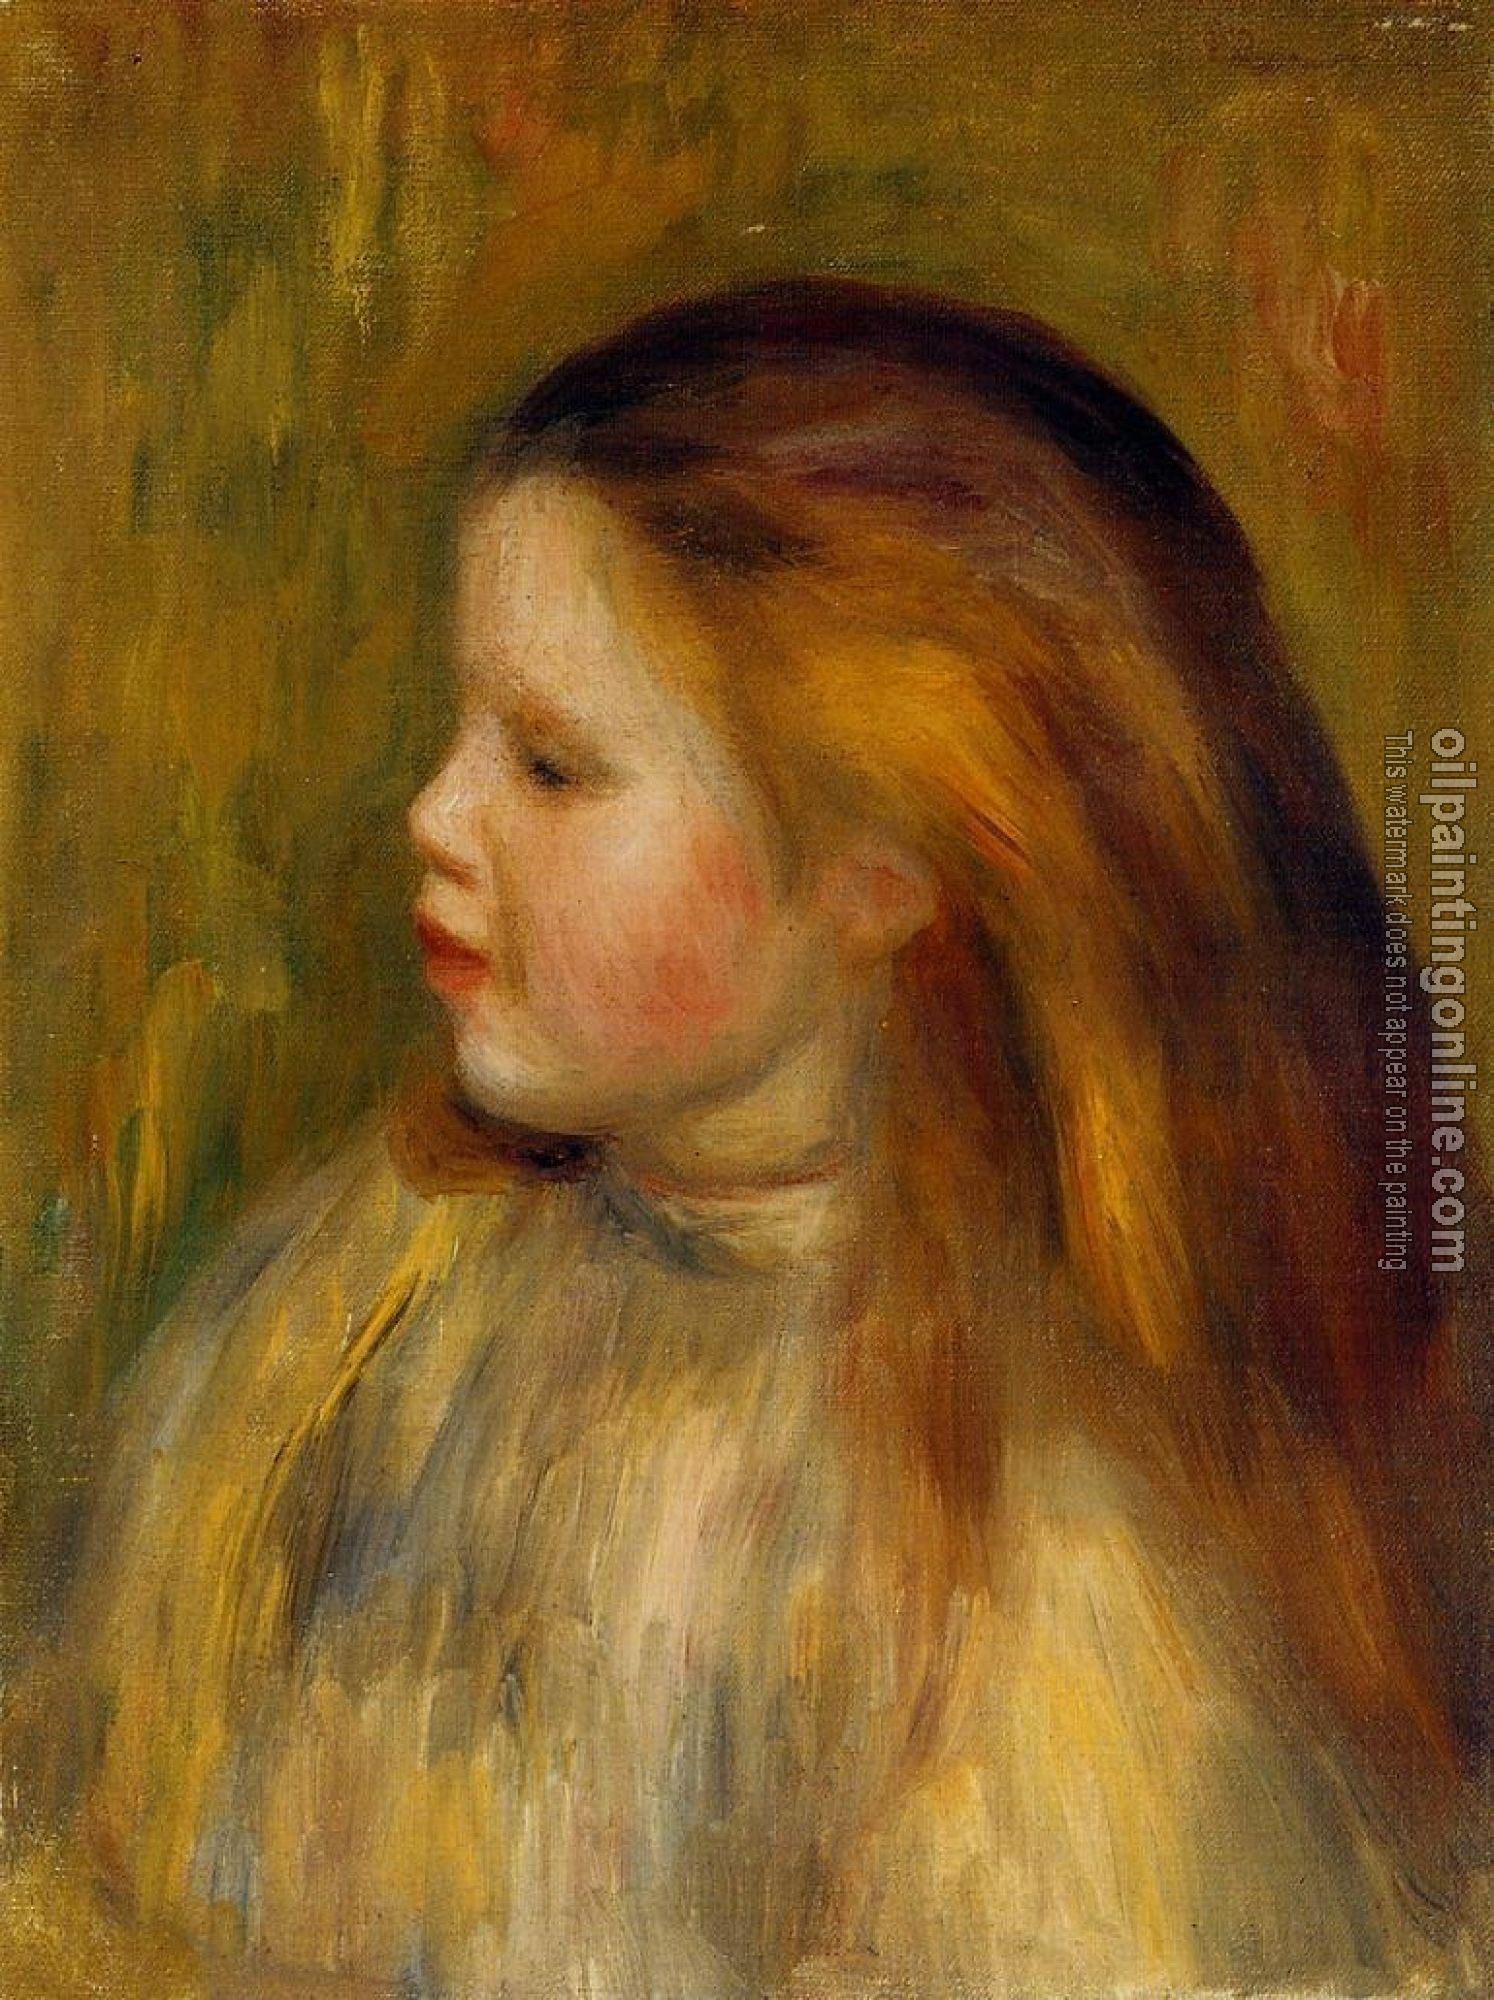 Renoir, Pierre Auguste - Head of a Little Girl in Profile